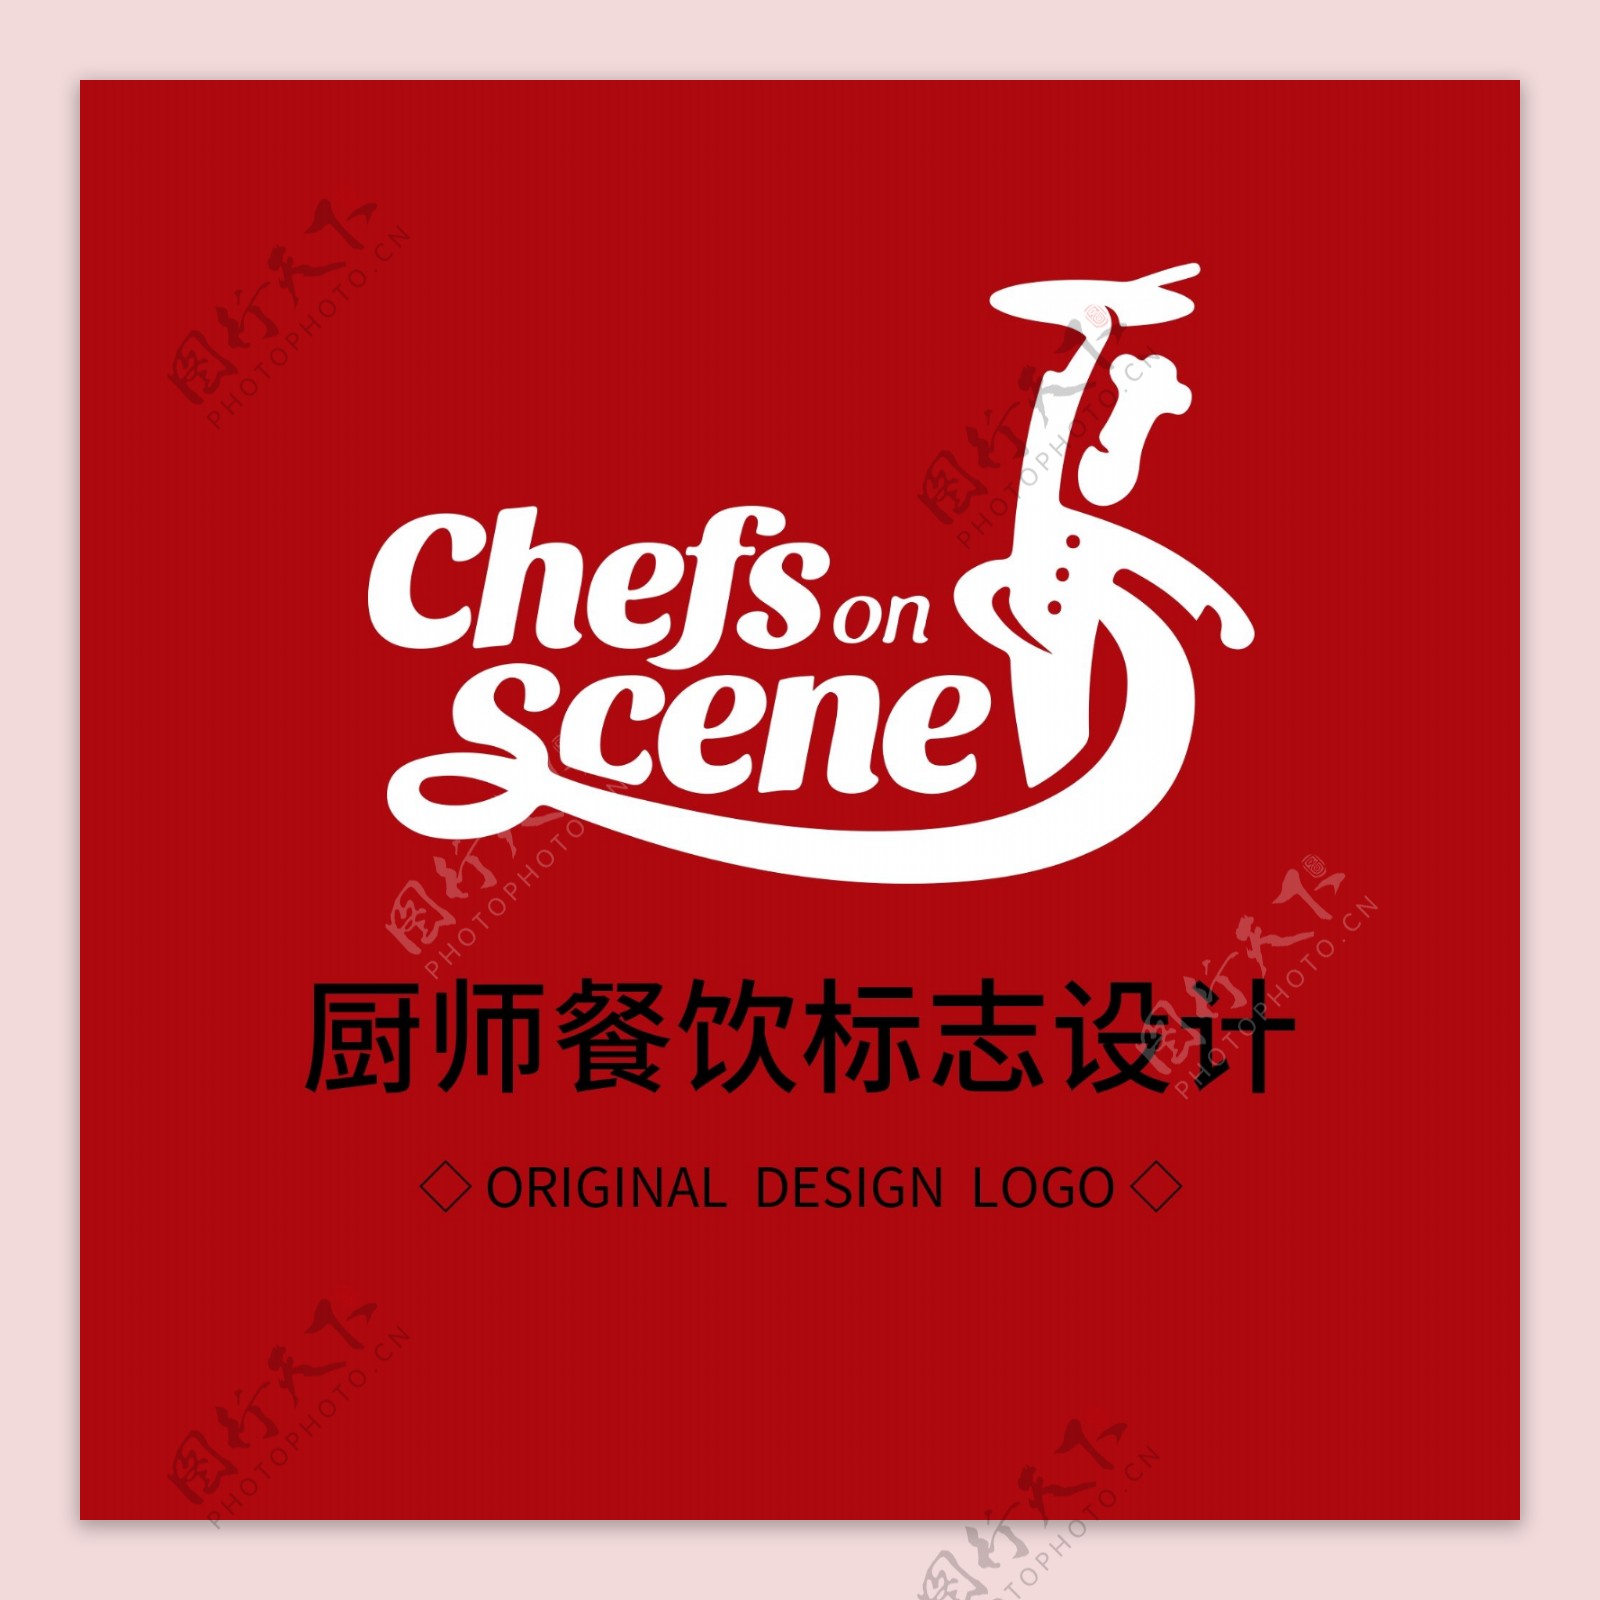 原创厨师餐饮标志设计